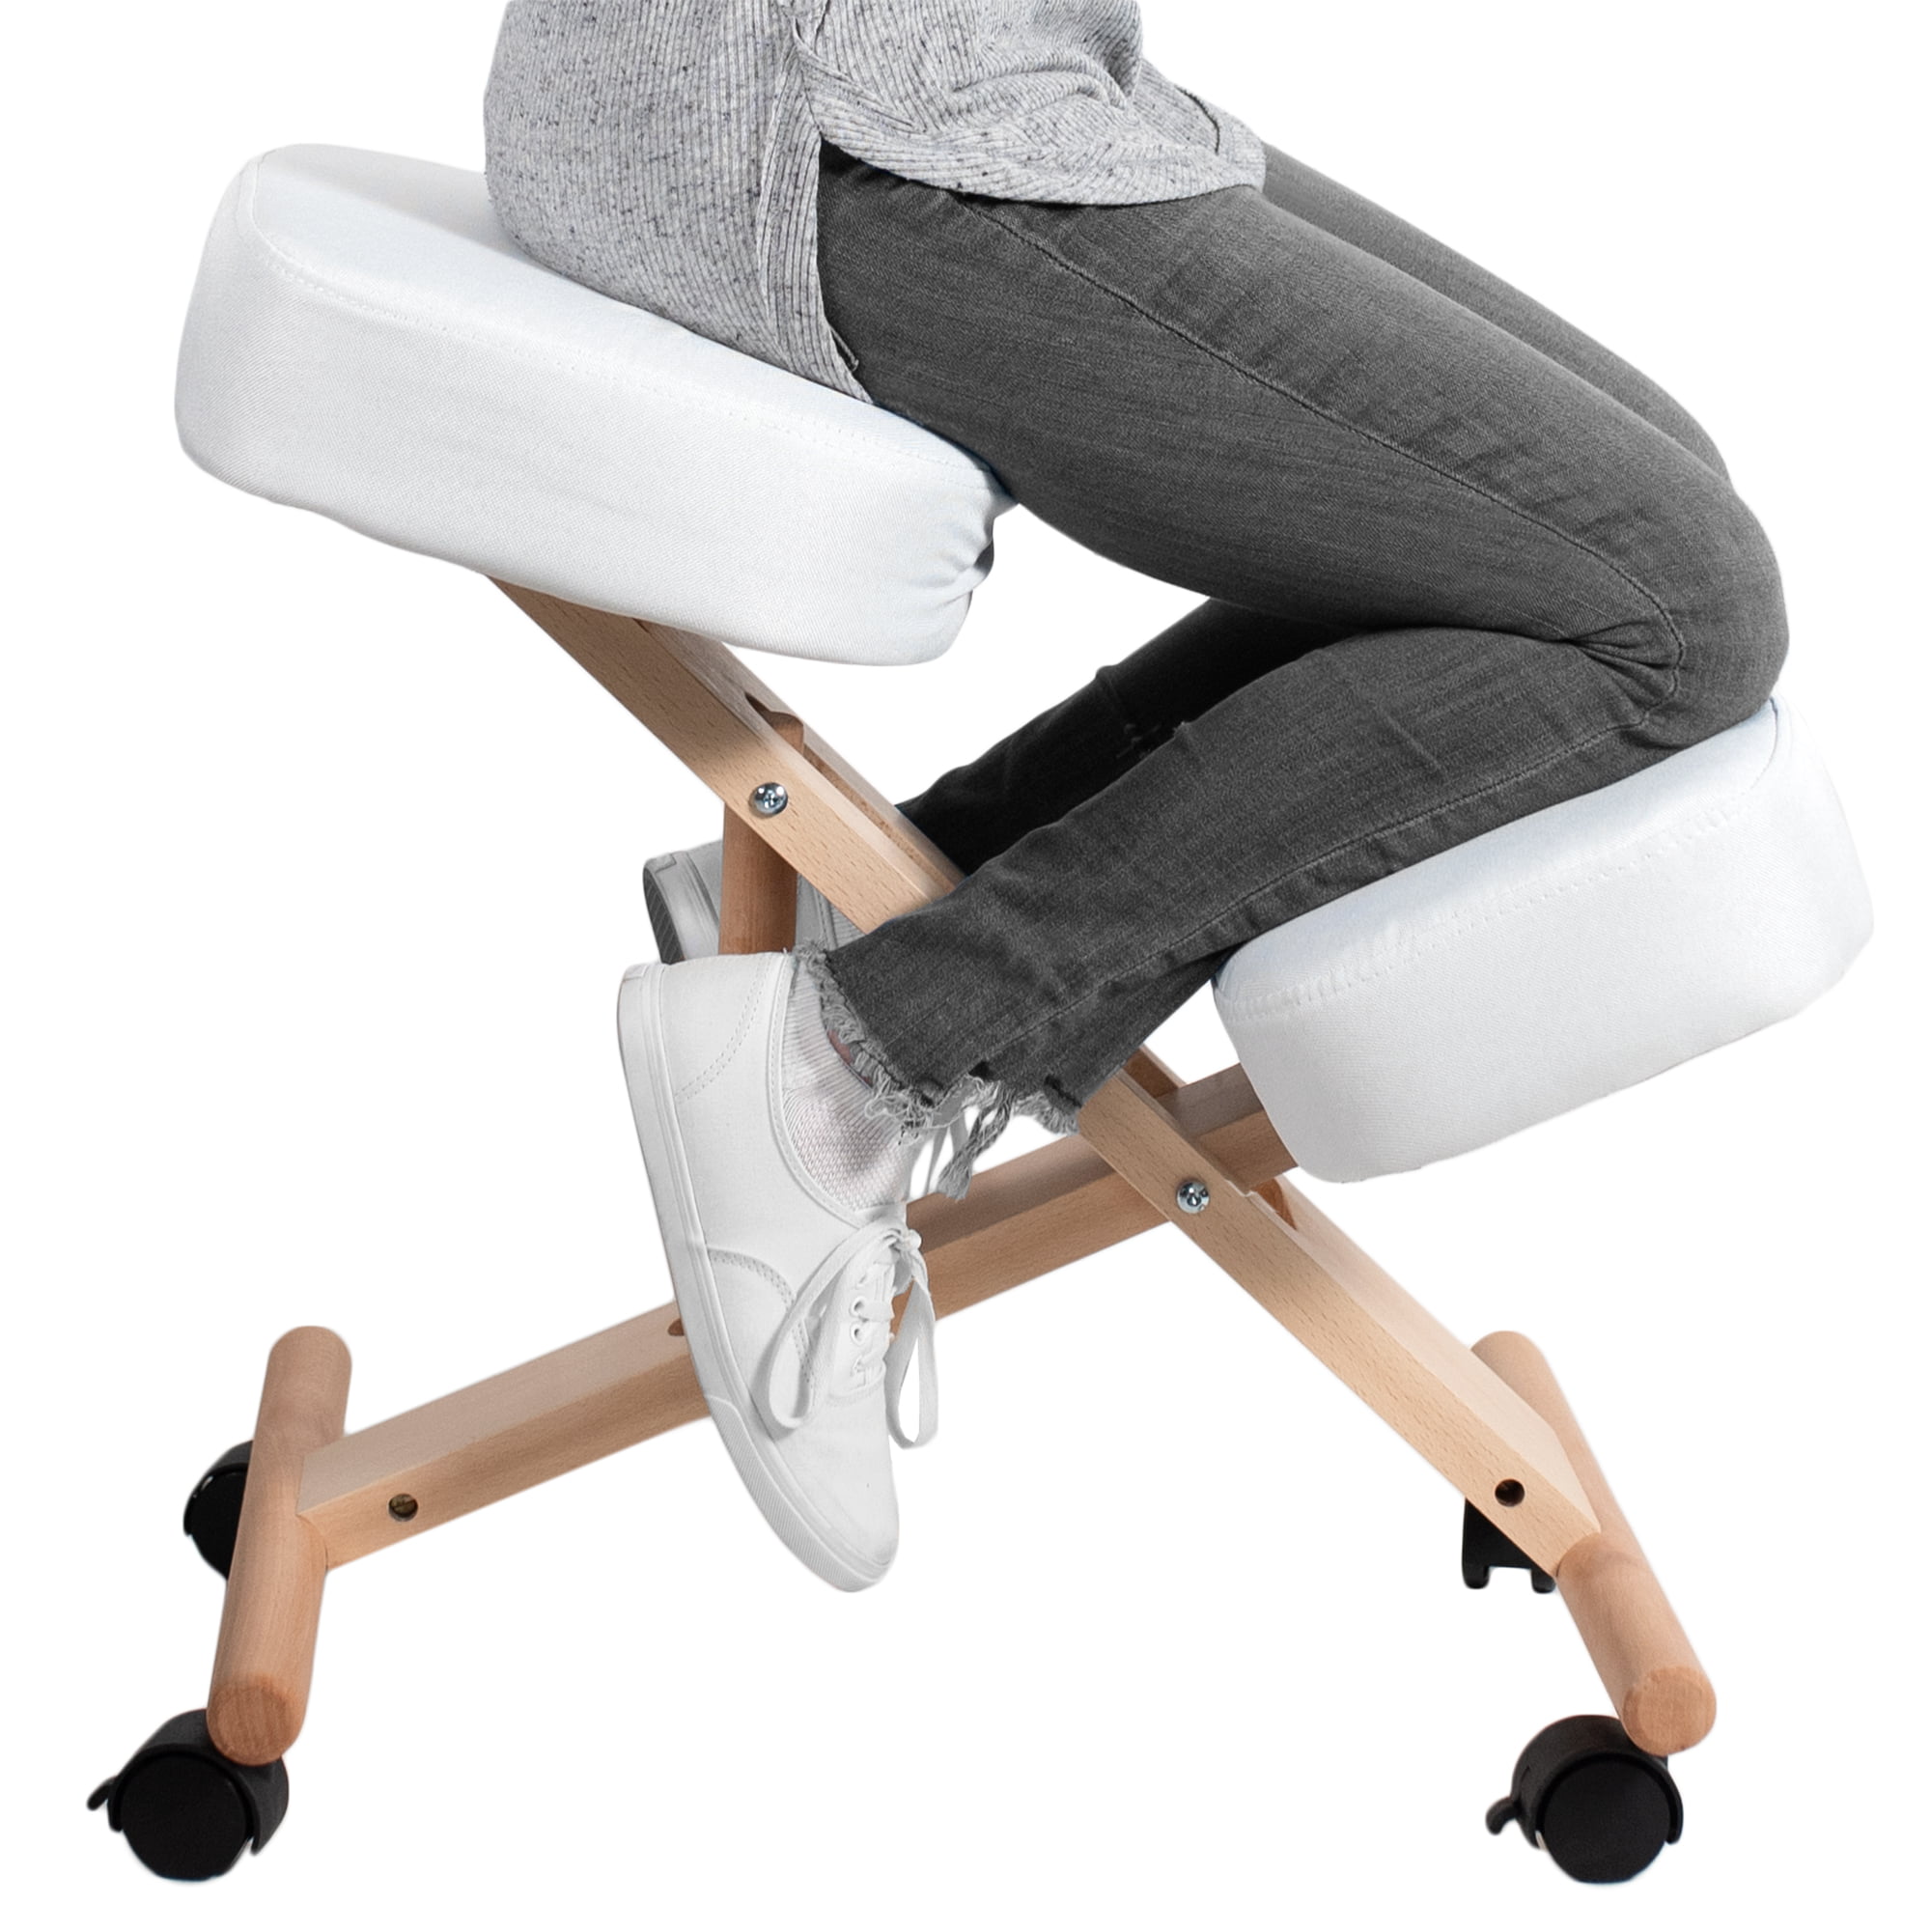 USED VIVO Ergonomic Wooden Rocking Kneeling Chair Rocker Stool for Home & Office 